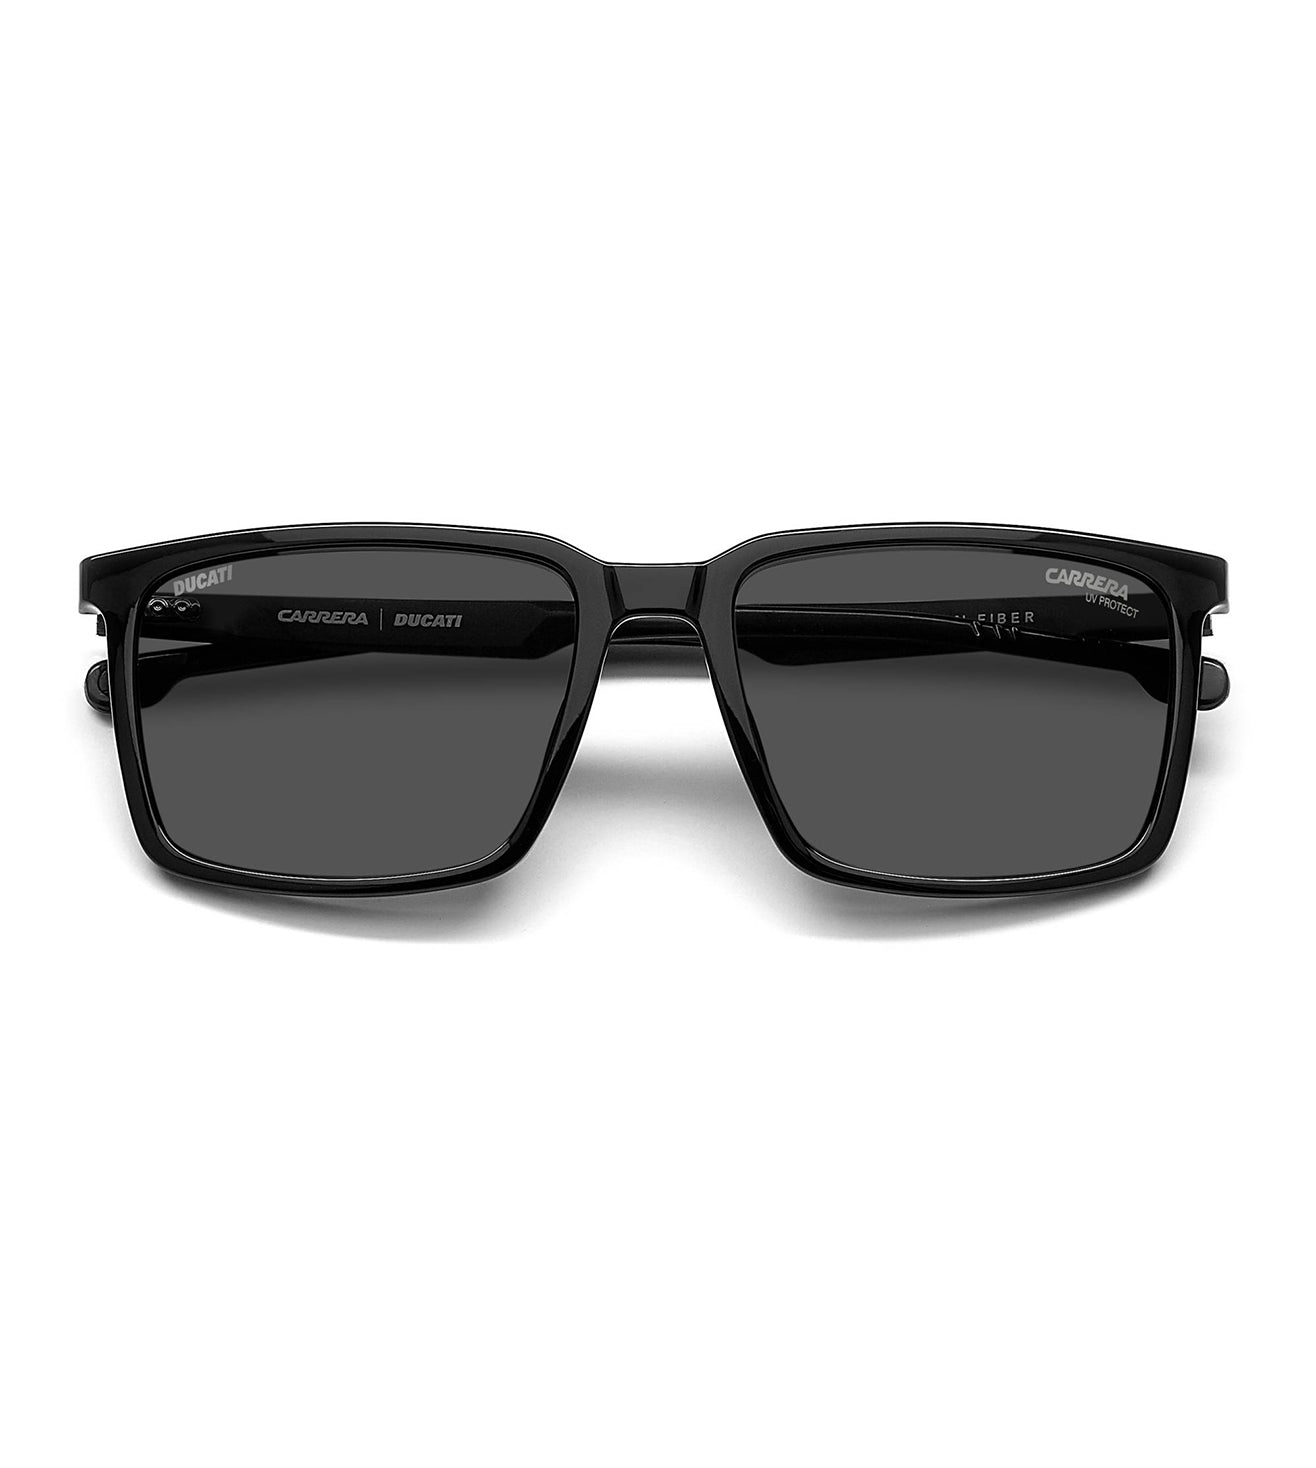 Carrera Men's Grey Square Sunglasses